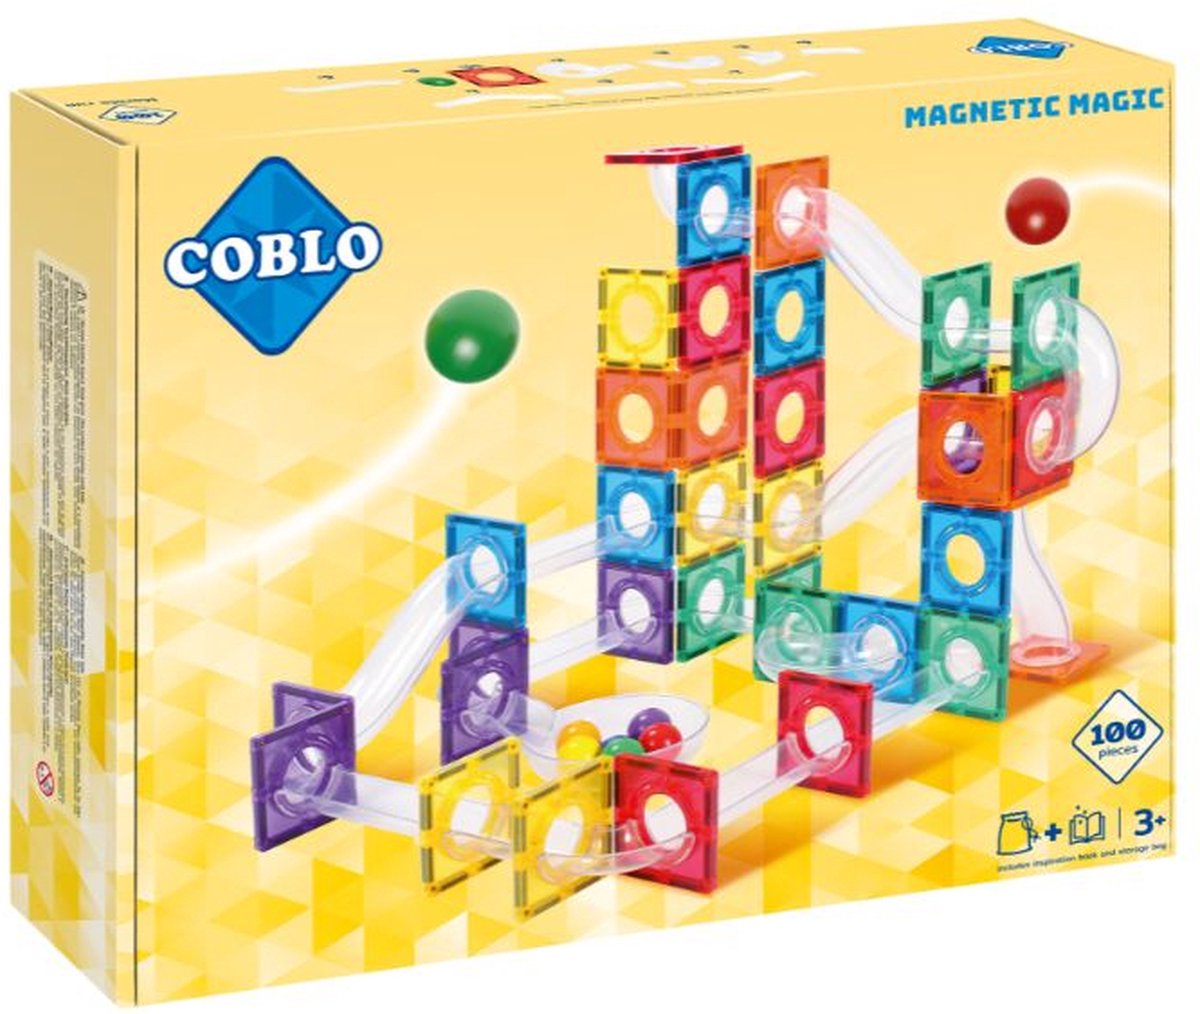 Coblo Knikkerbaan - Magnetisch speelgoed - 100 onderdelen - Constructie speelgoed